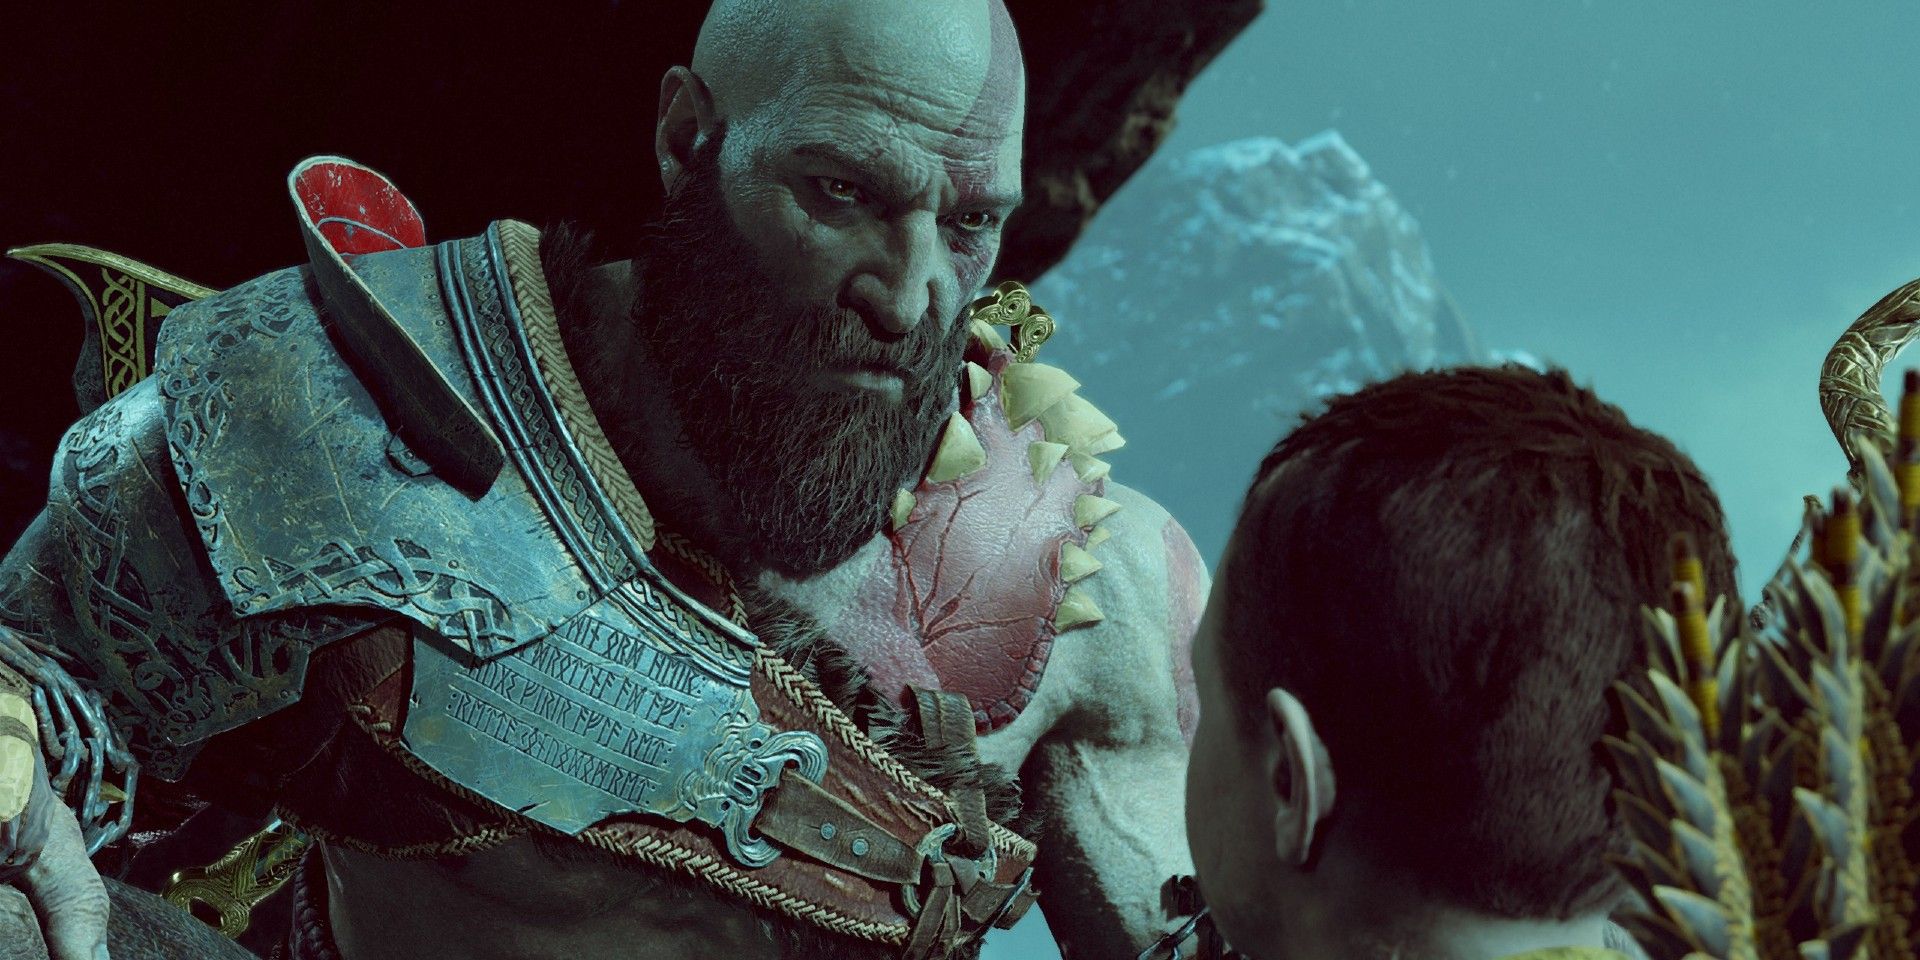 An image of Kratos talking to Atreus in God of War